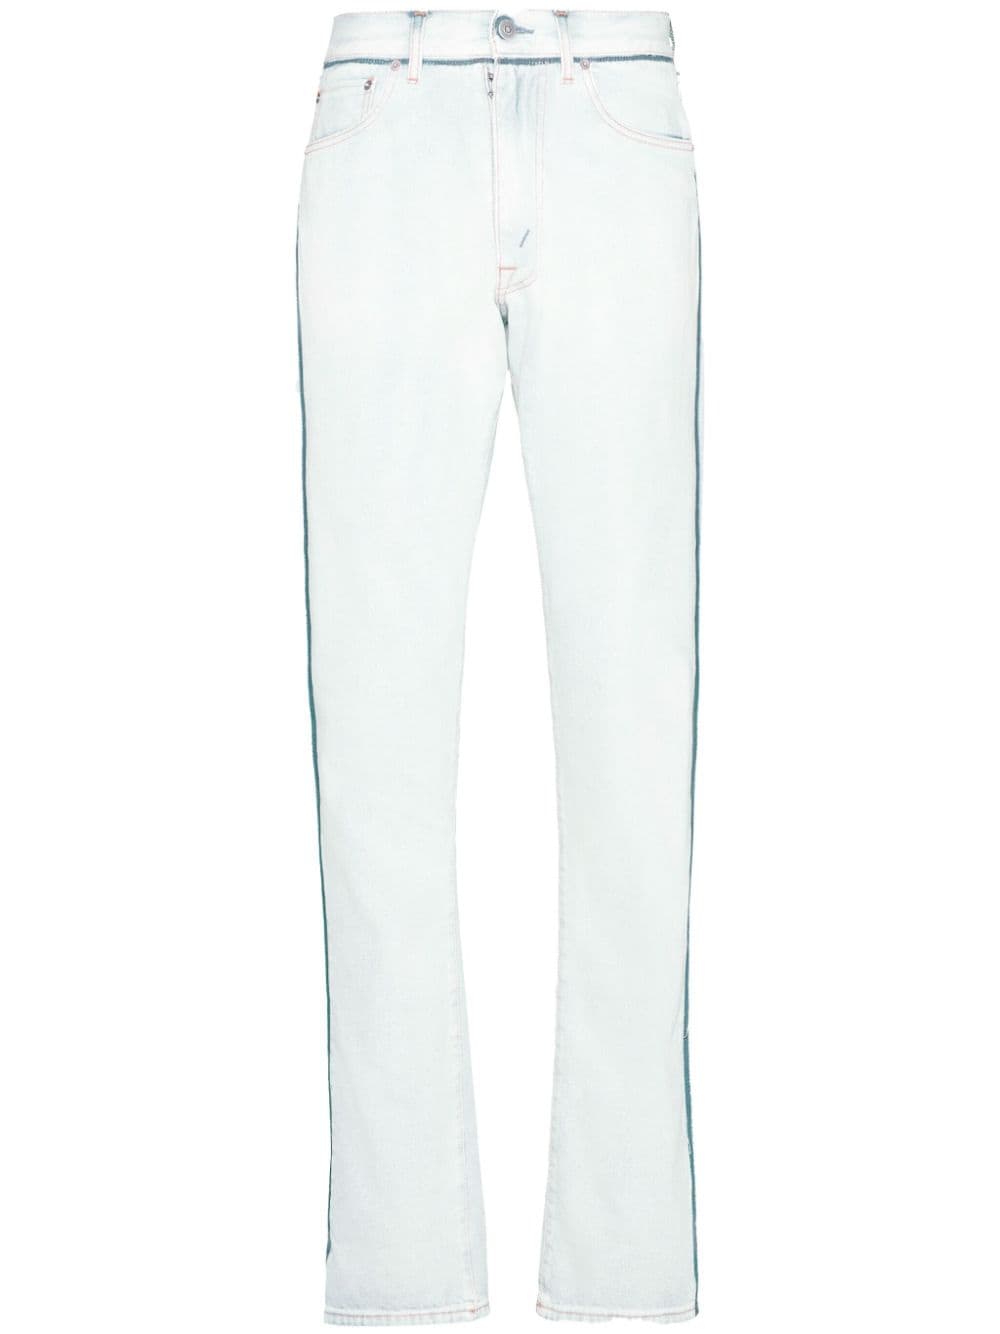 Maison Margiela Japanese Denim Turn-up Jeans In White